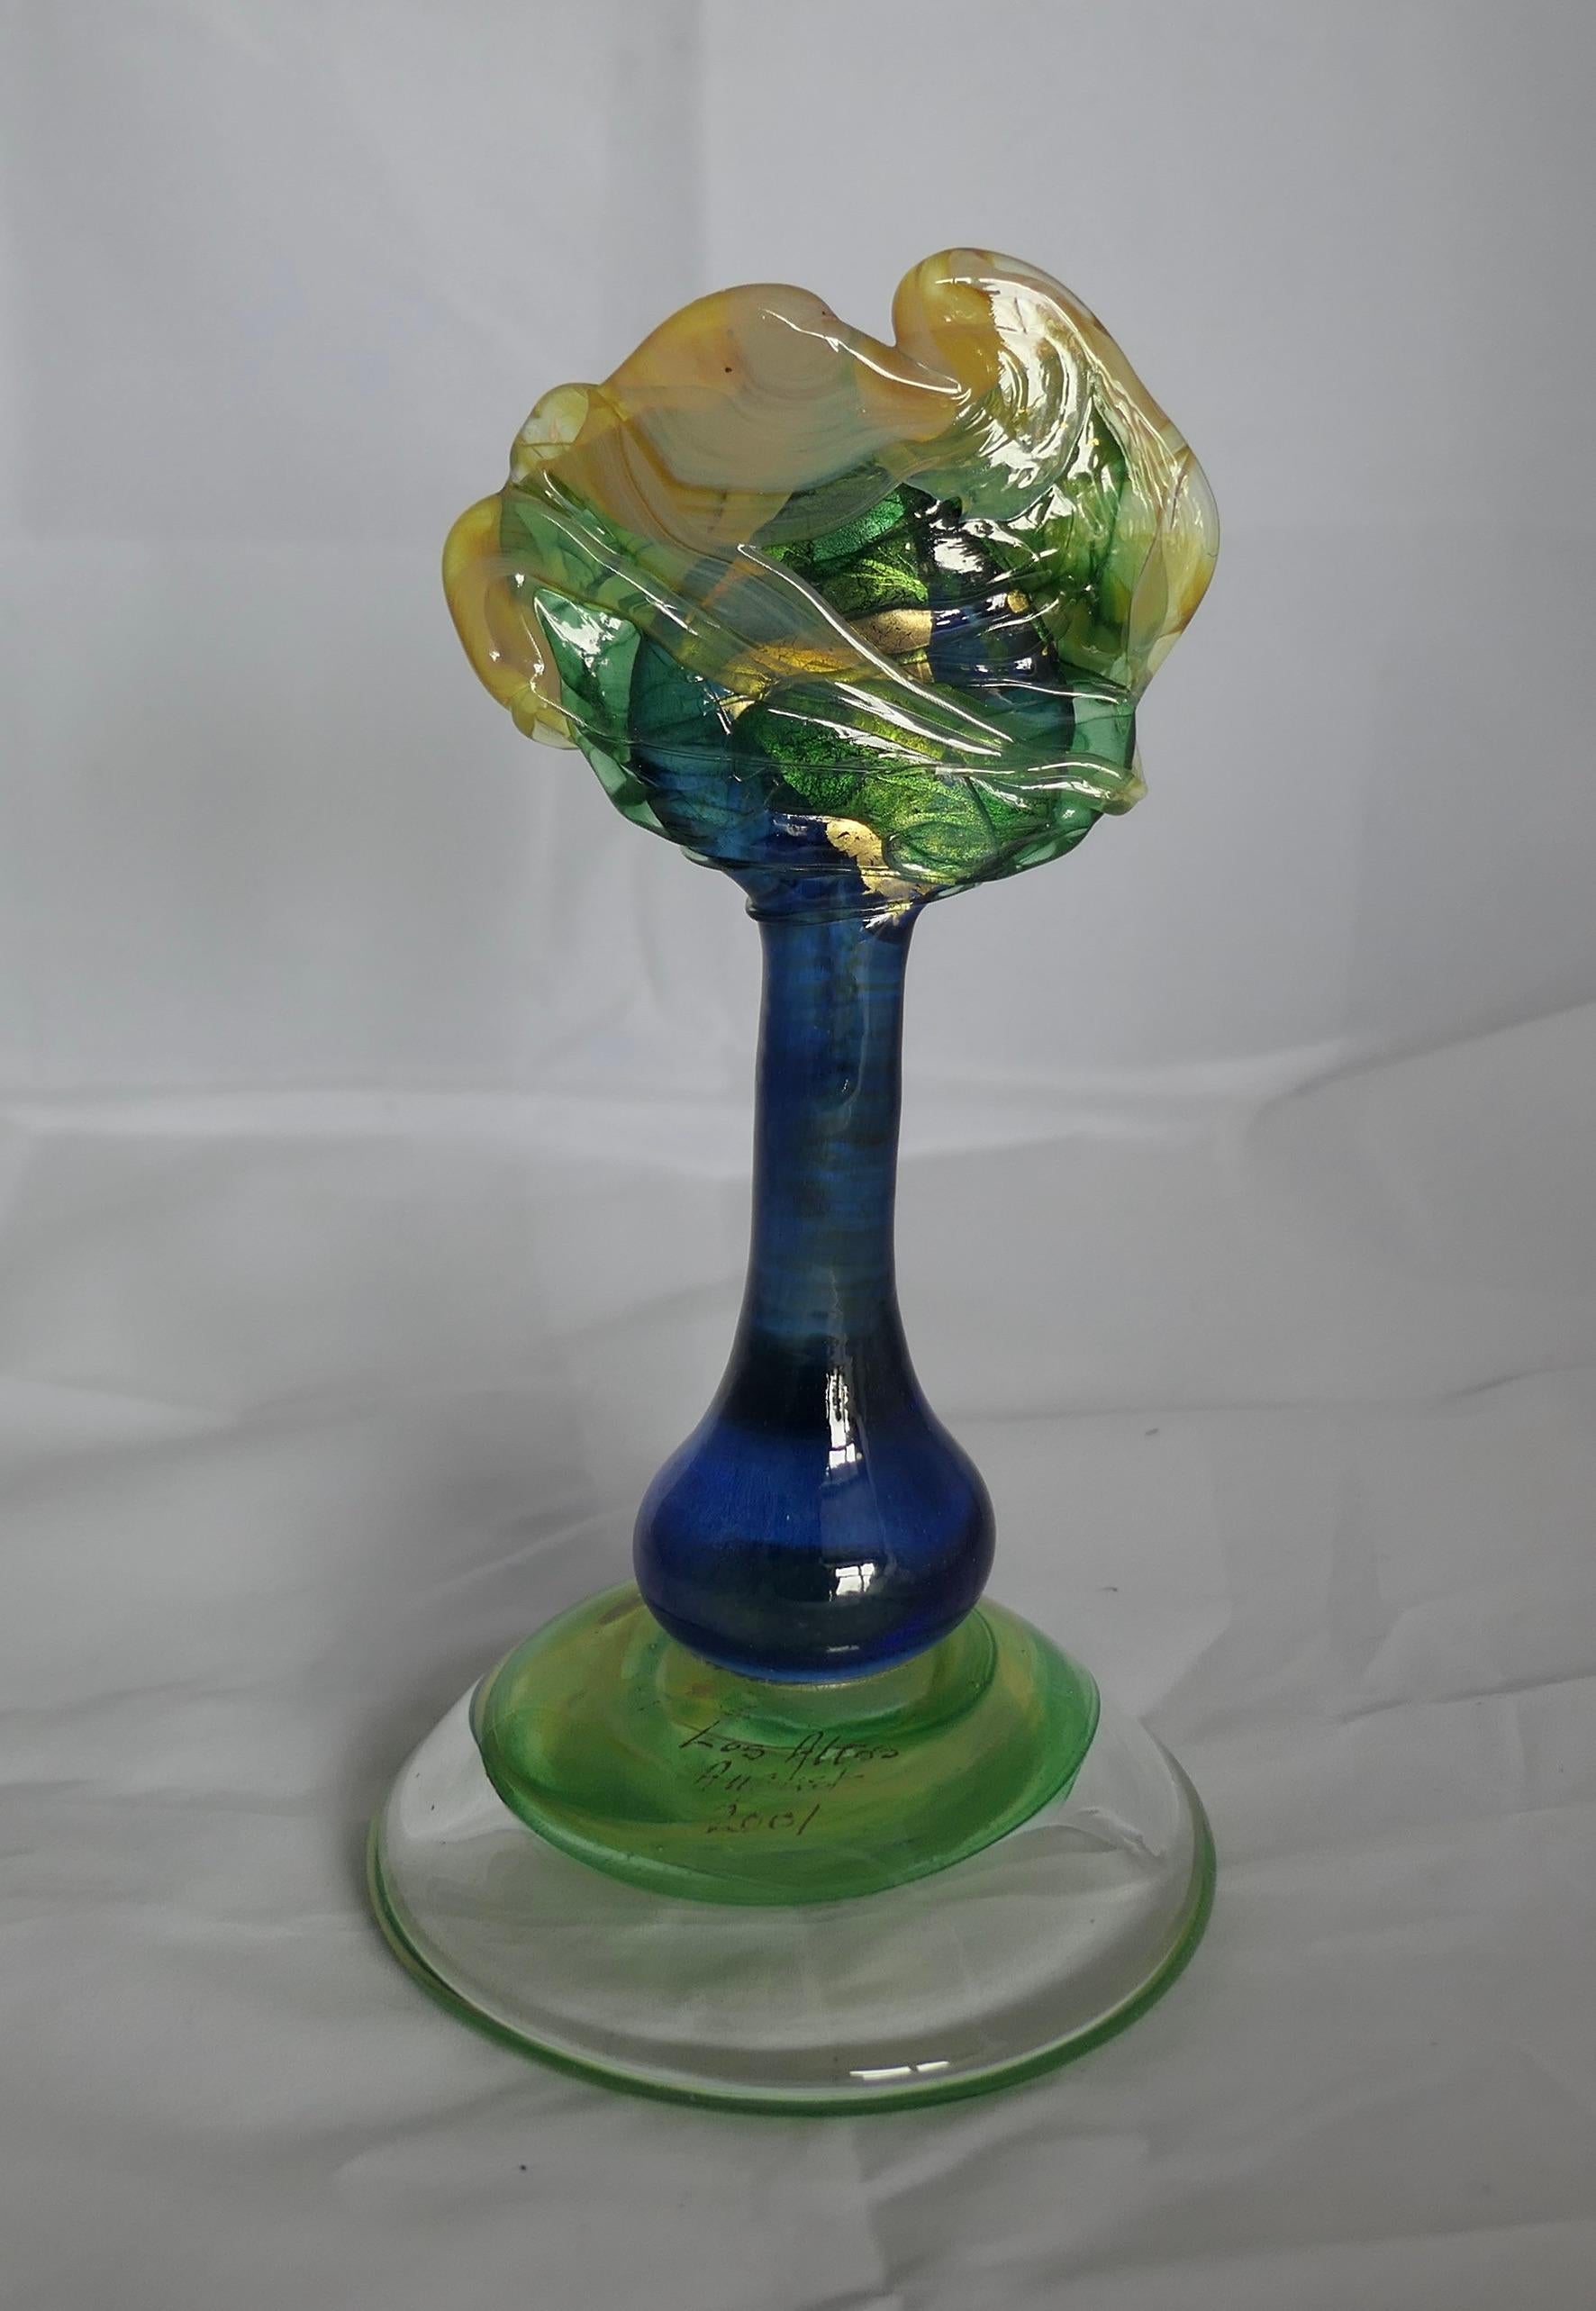 Isle of Wight Studio Glass Tree Signé Martin Evans

Superbe pièce dans le style Arts and Crafts Signée Martin Evans 2001, l'arbre est en bleu néon avec du vert et de l'or.
Sur la partie supérieure de la base figure le titre 